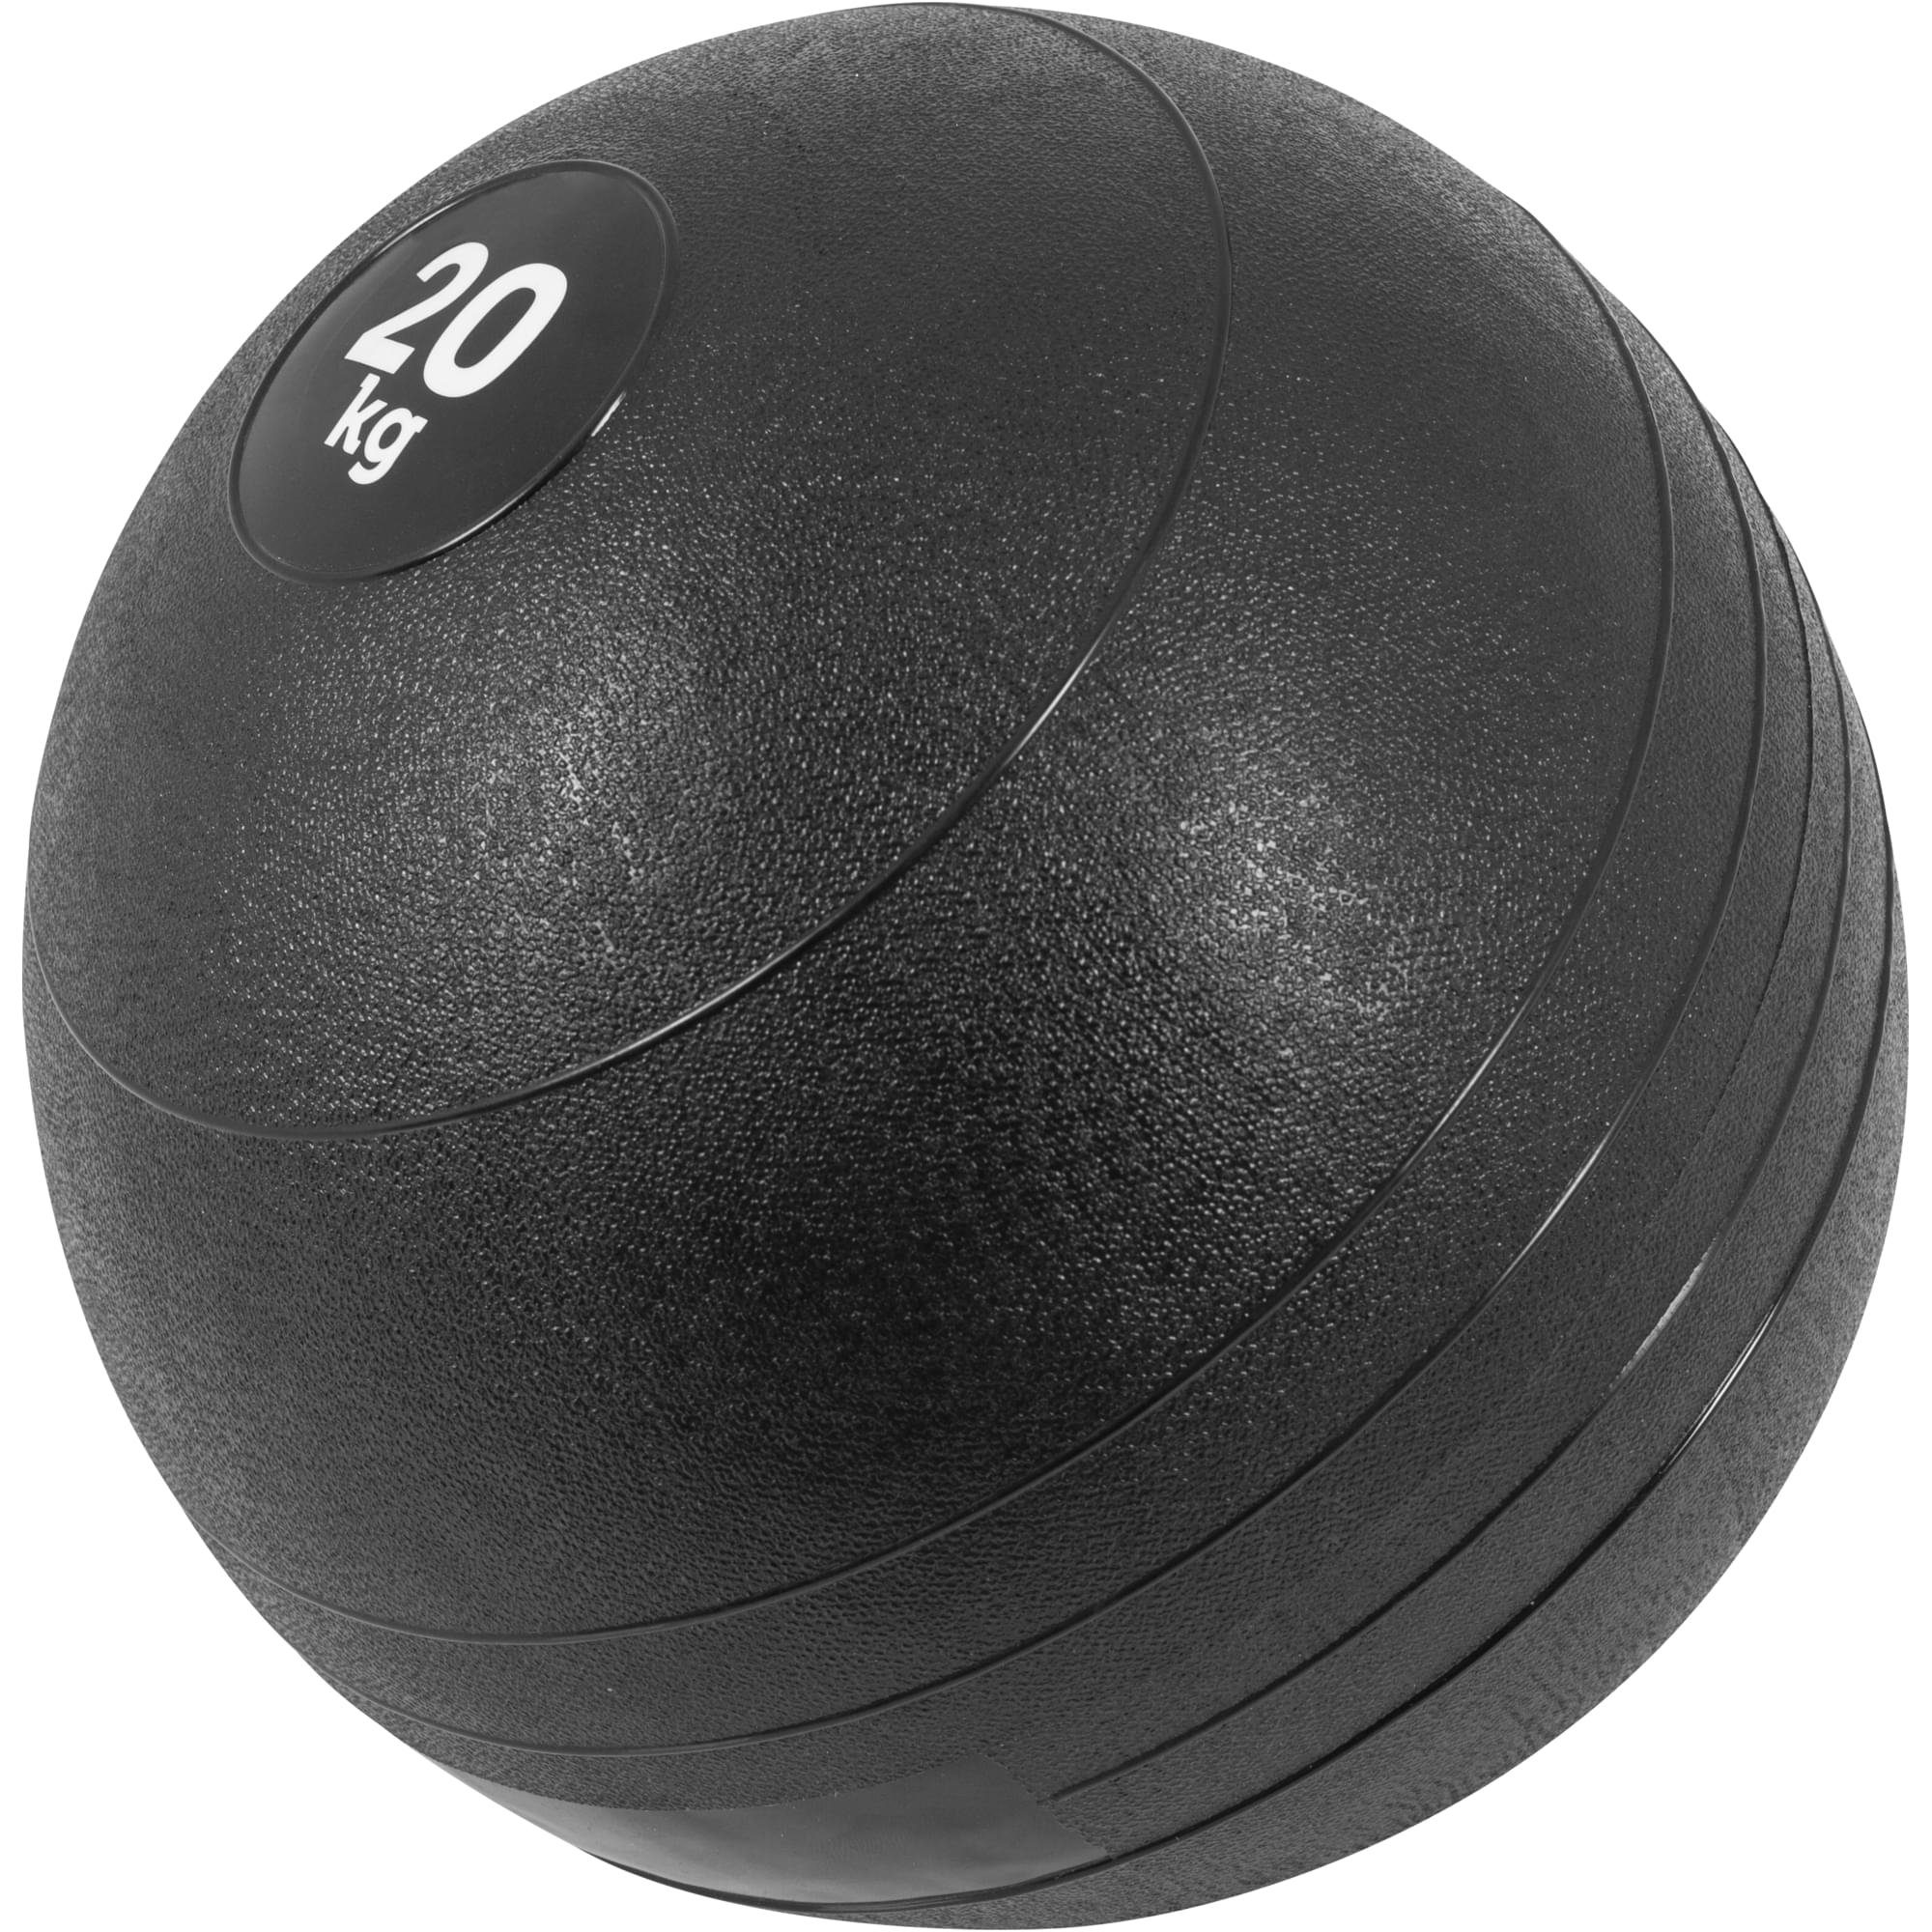 GORILLA SPORTS Medizinball 3kg, 5kg, 7kg, 10kg, 15kg, 20kg, Einzeln/Set, mit Griffiger Oberfläche